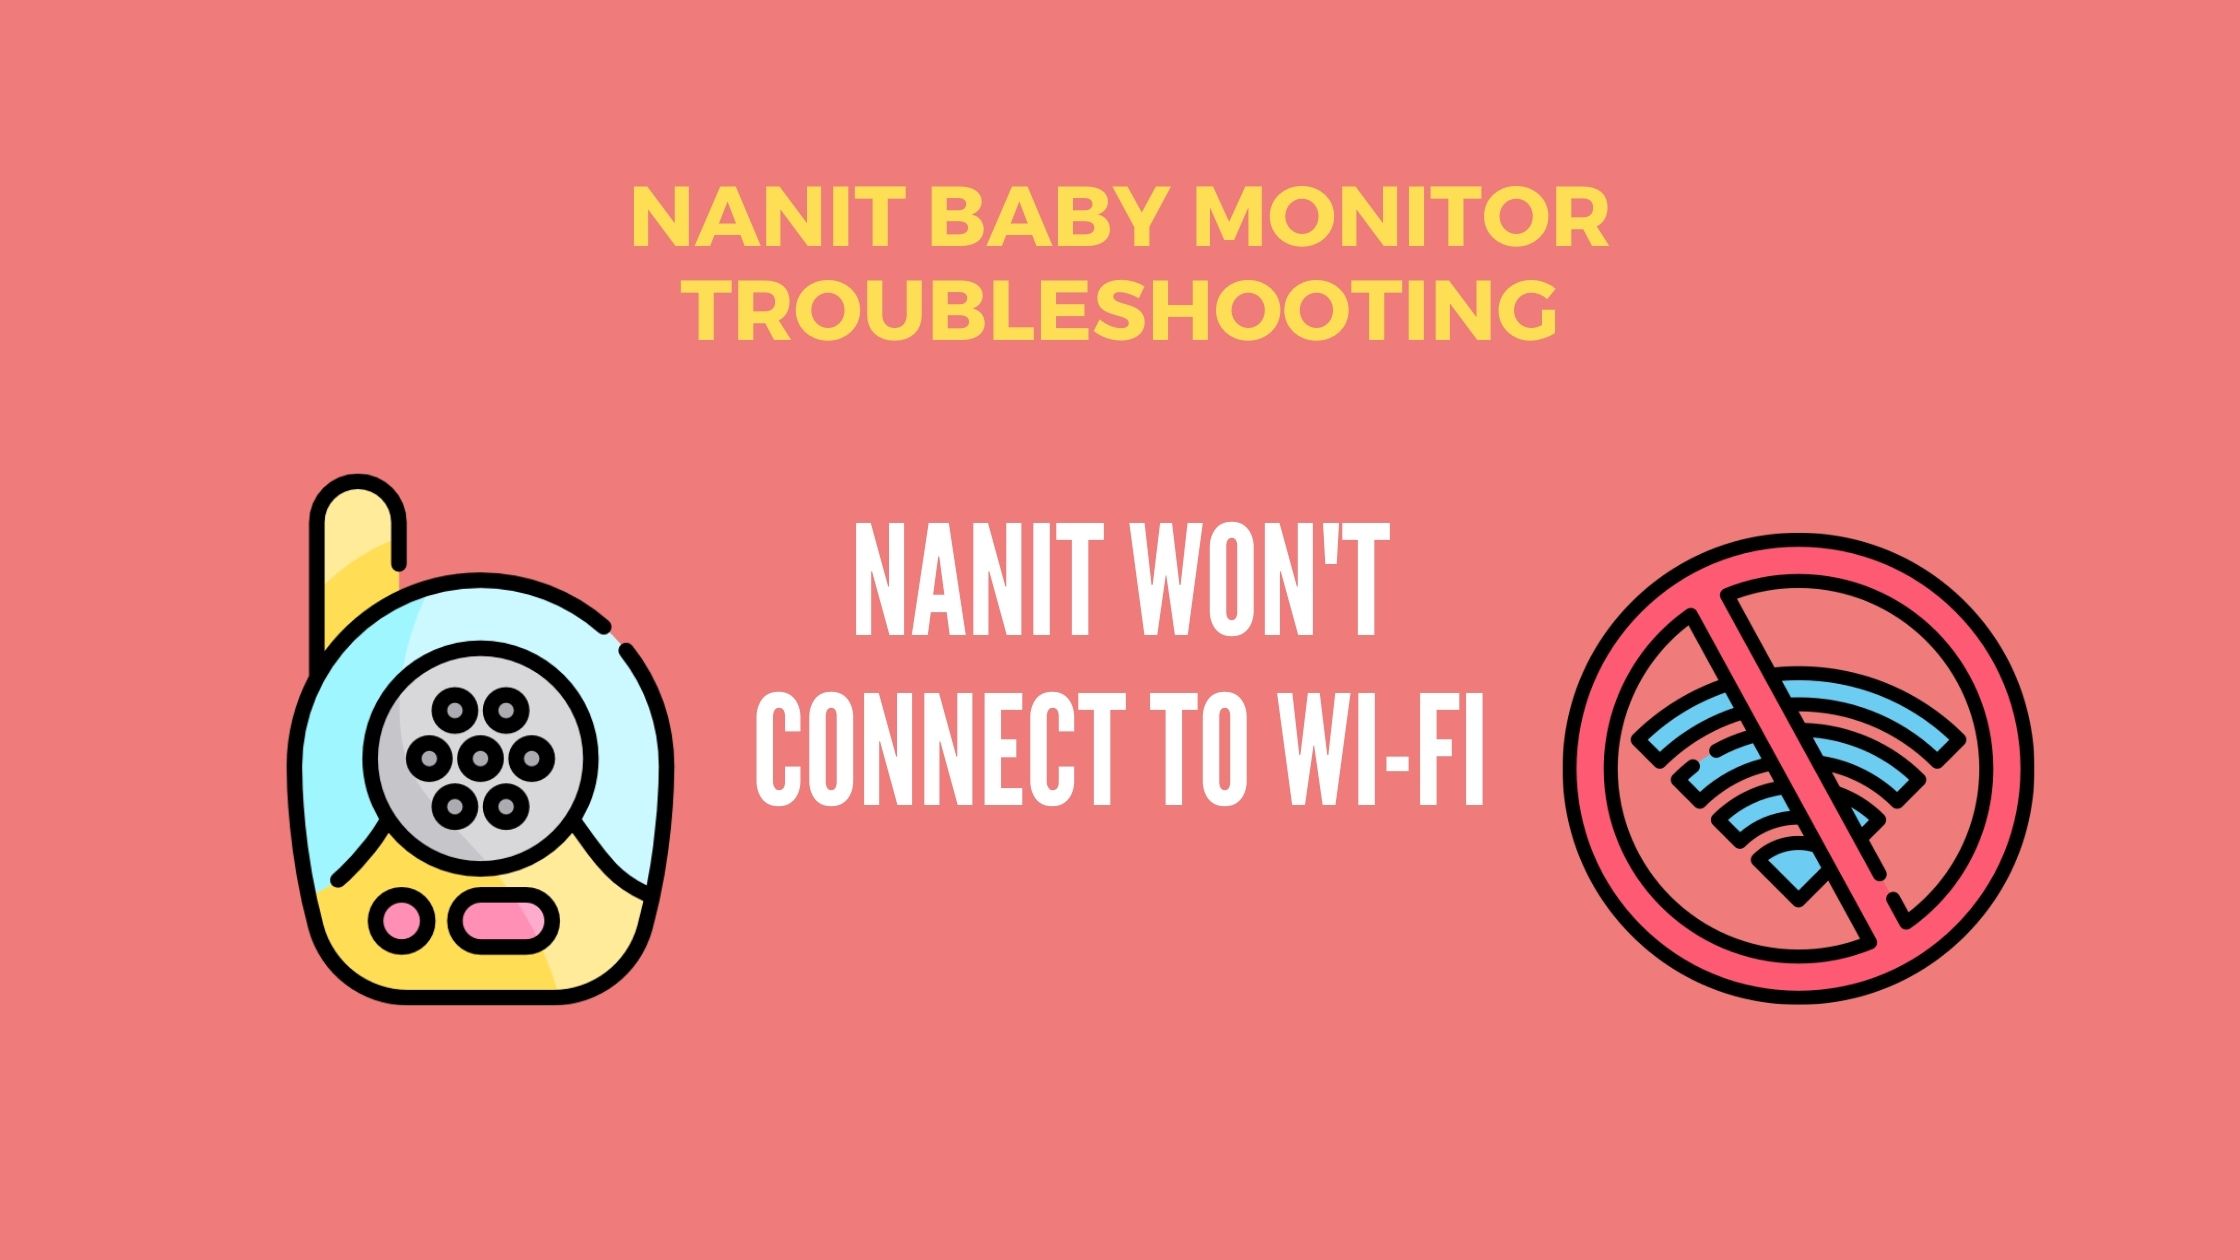 Nanit won't connect to Wi-Fi